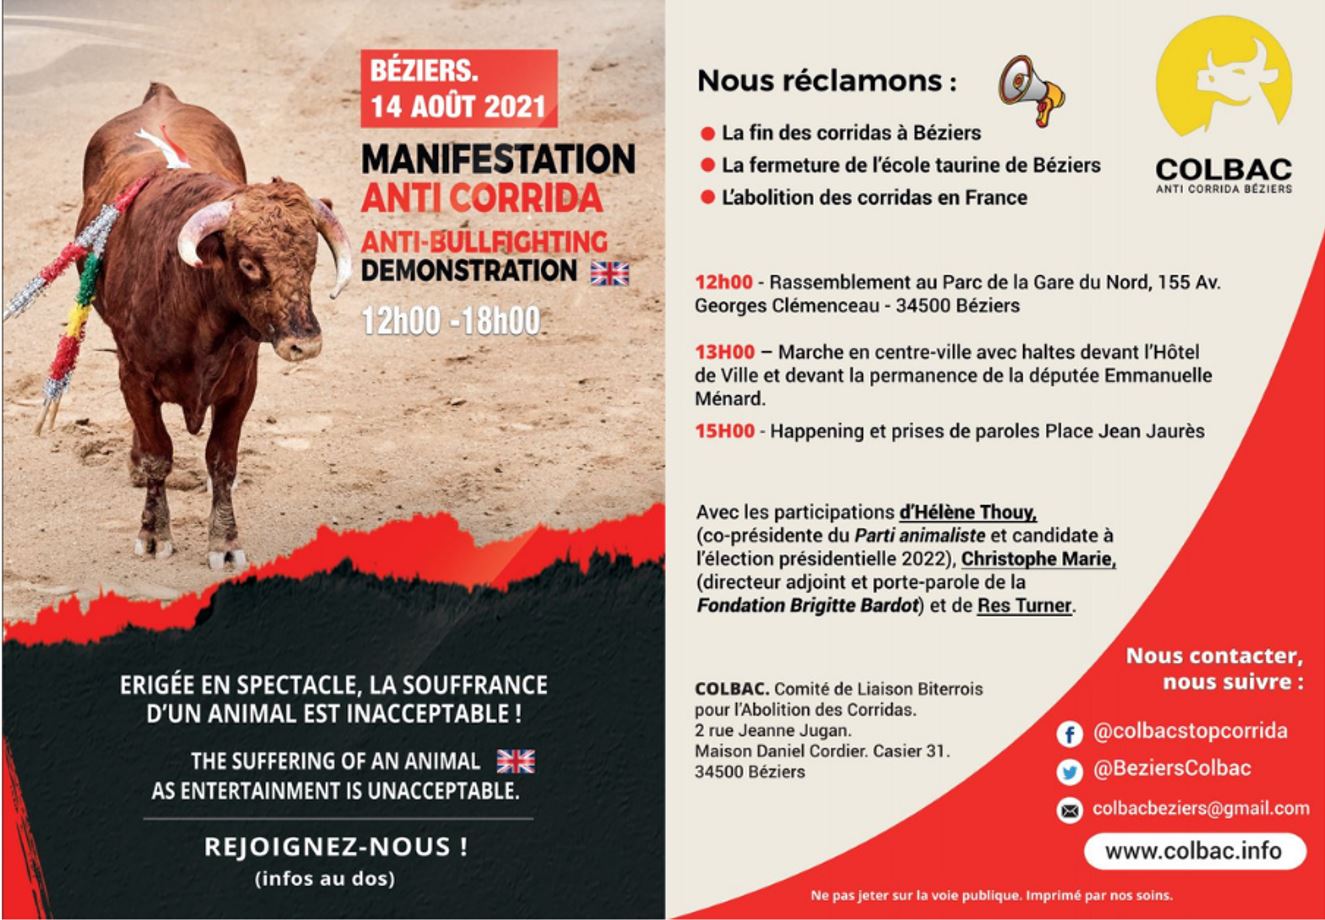 Béziers - Le Colbac manifeste contre les corridas organisées à Béziers le samedi 14 août